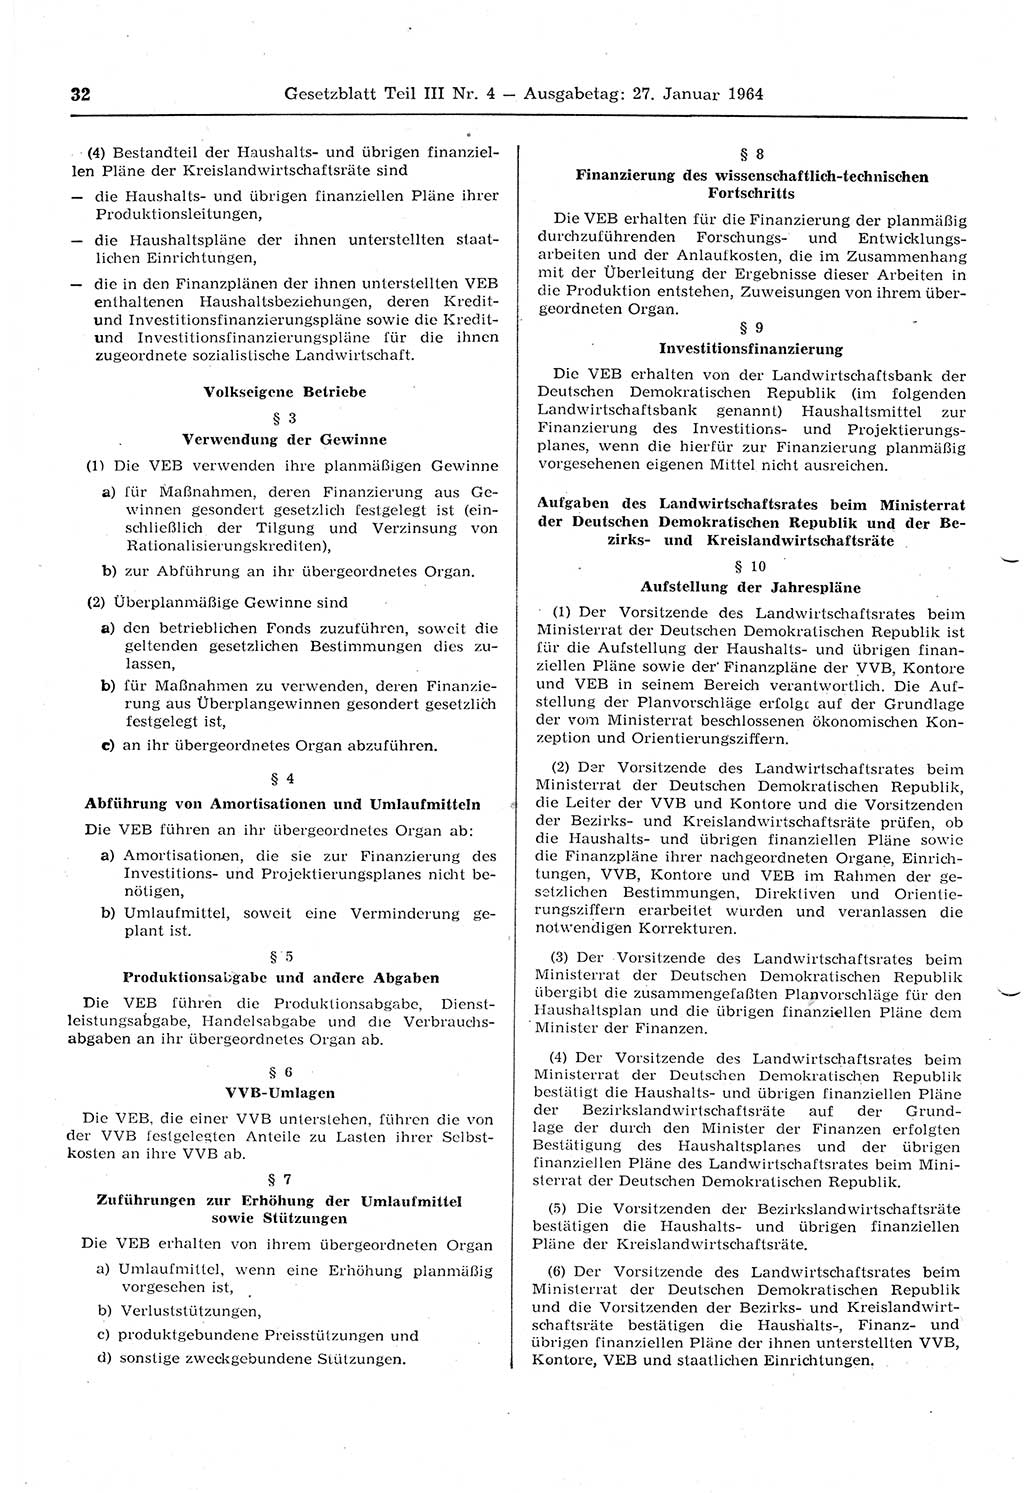 Gesetzblatt (GBl.) der Deutschen Demokratischen Republik (DDR) Teil ⅠⅠⅠ 1964, Seite 32 (GBl. DDR ⅠⅠⅠ 1964, S. 32)